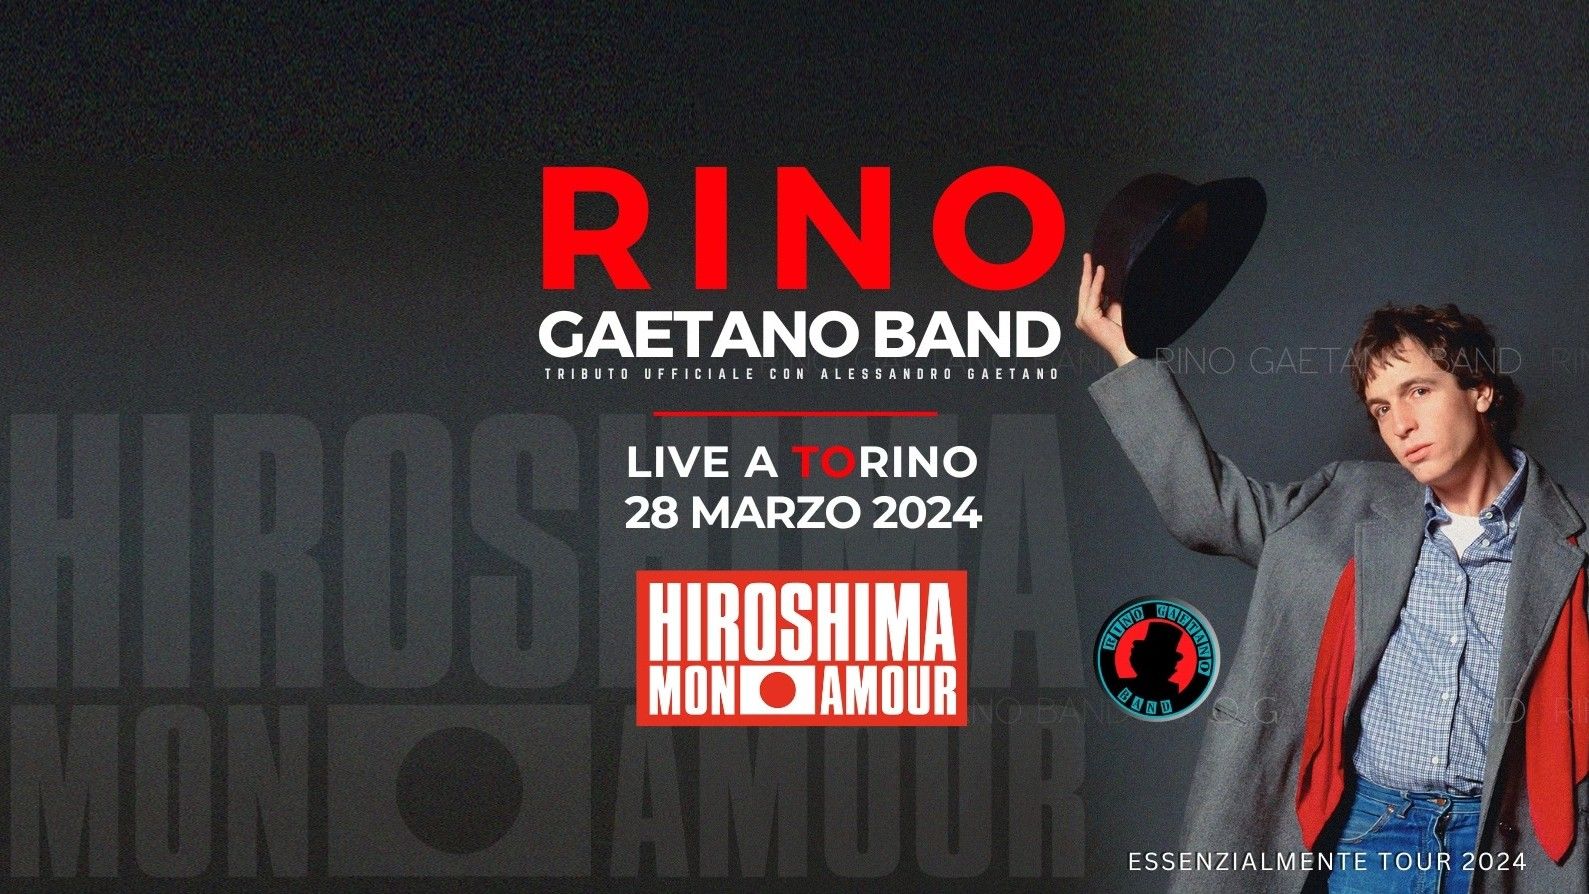 Rino Gaetano Band